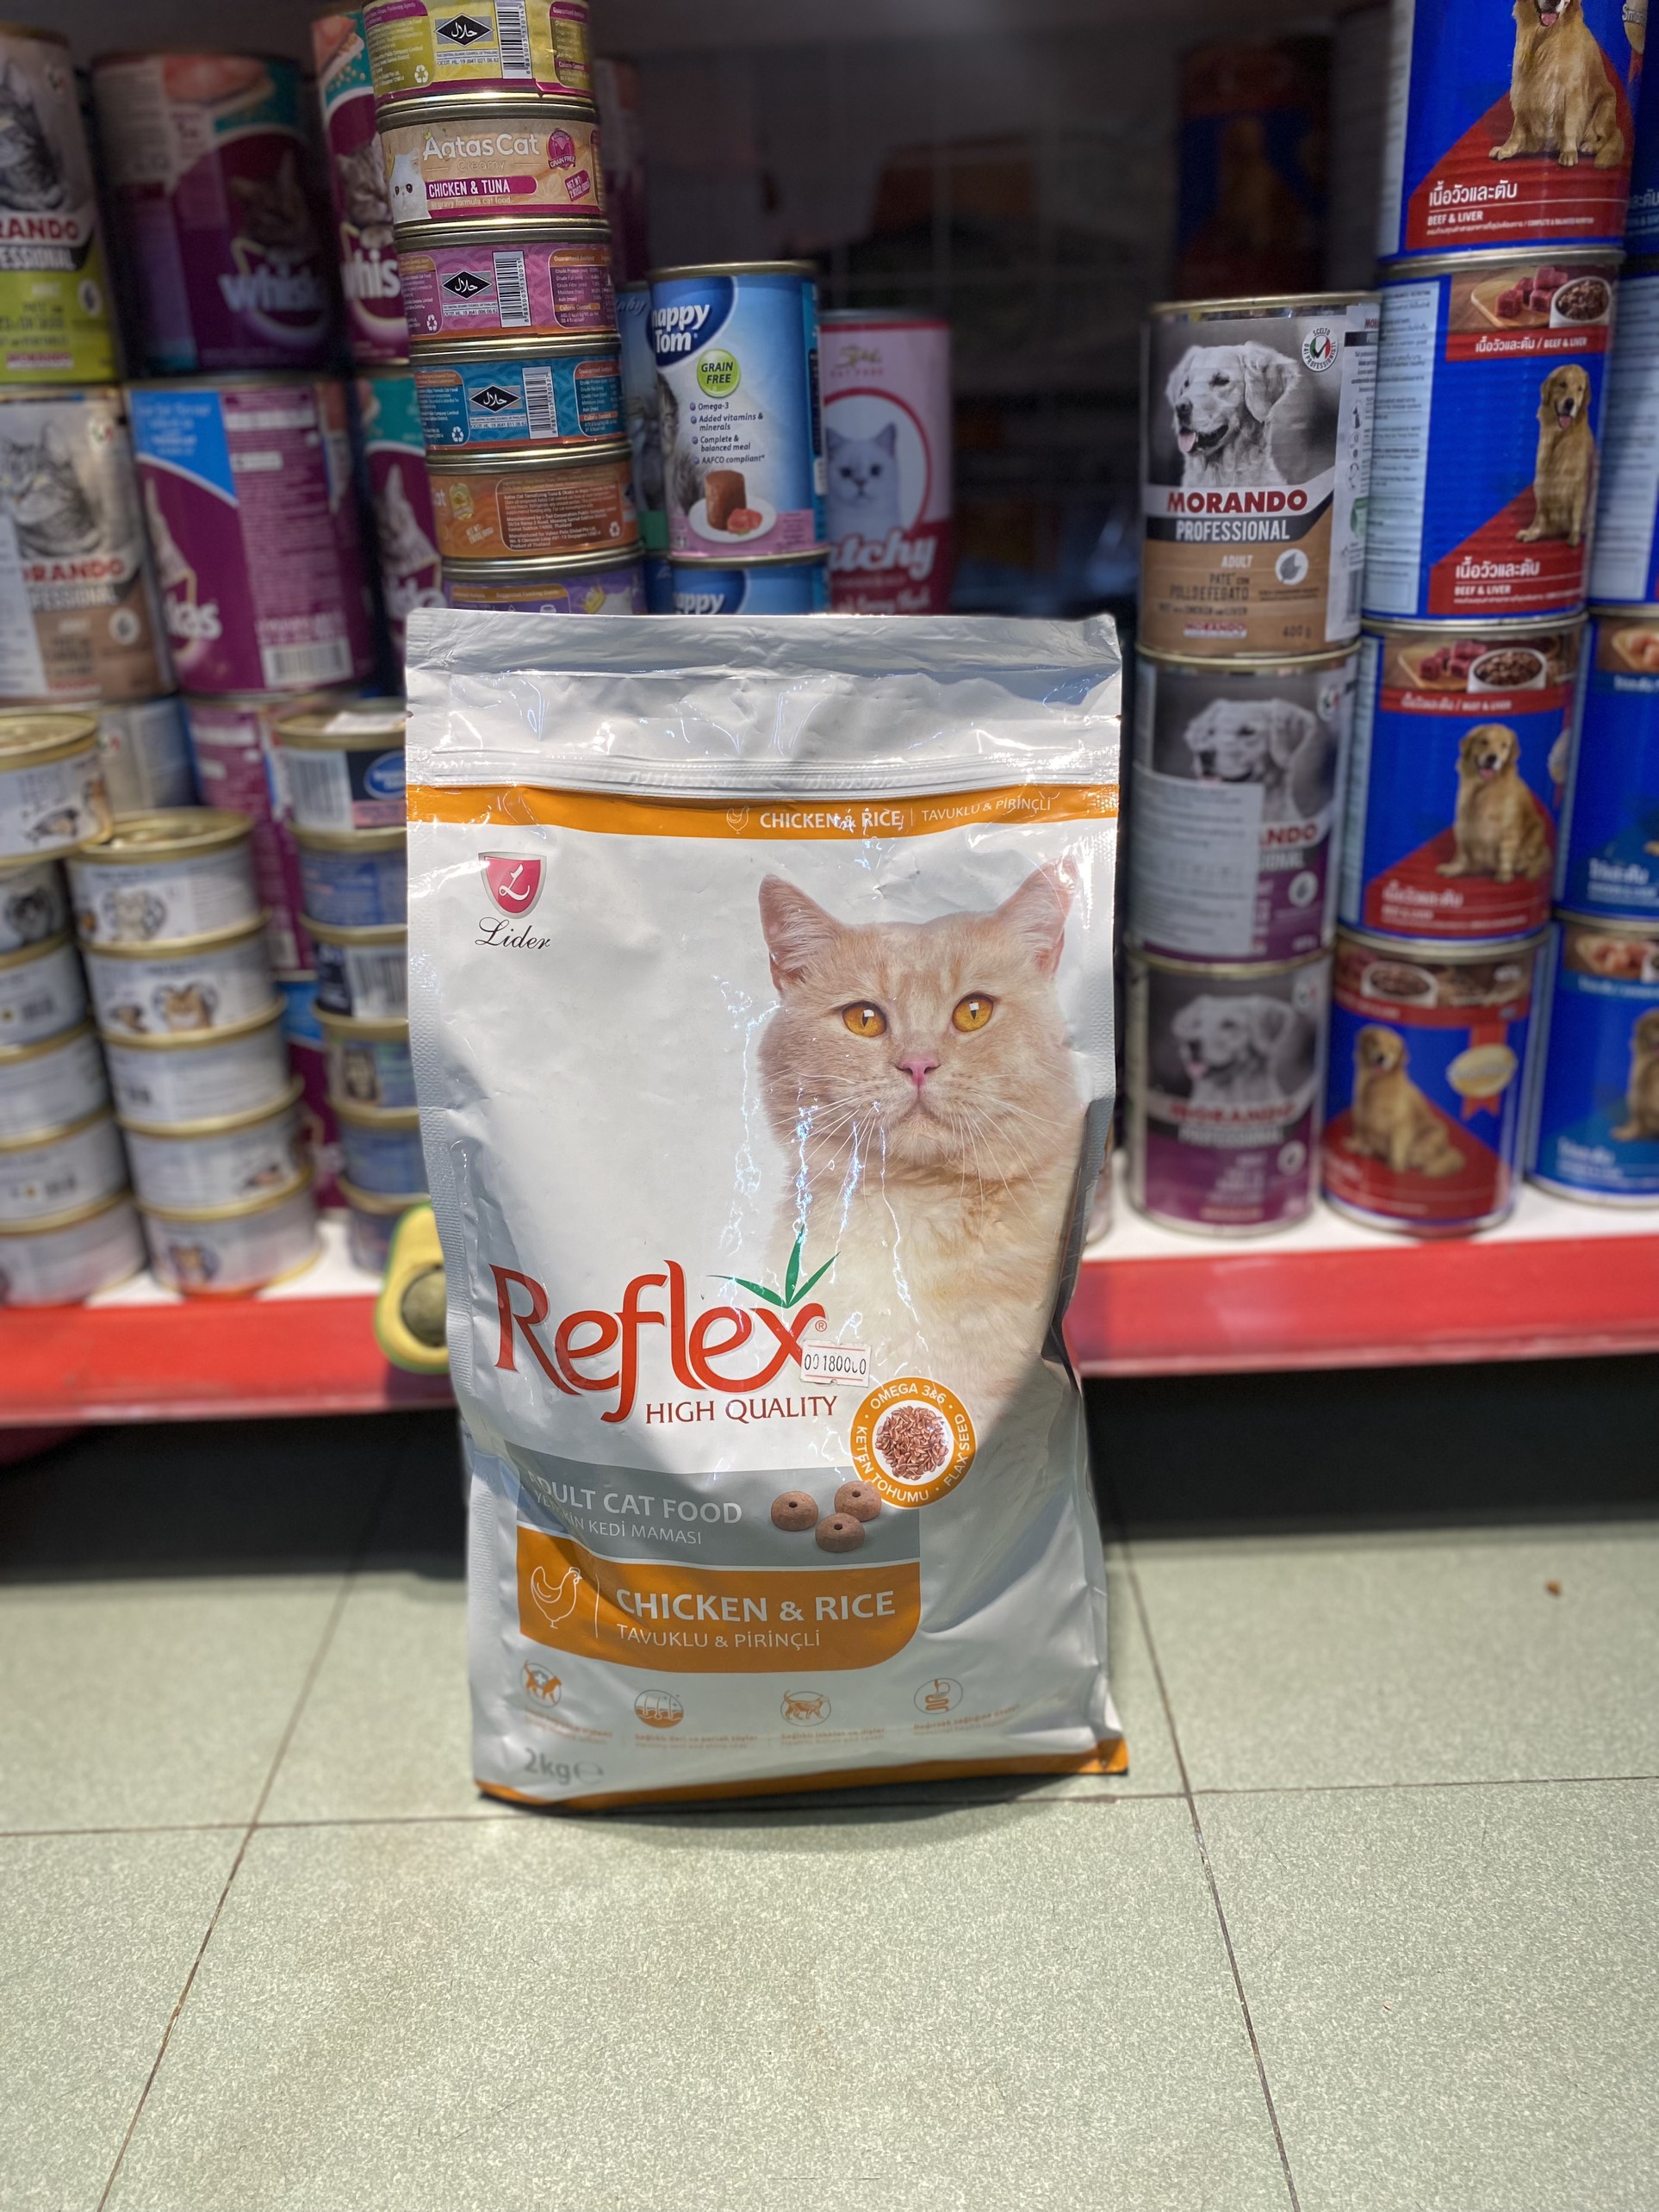 Hạt Reflex, Reflex Plus cho mèo, Hạt cho mèo con và mèo lớn xuất xứ Thổ Nhĩ Kỳ